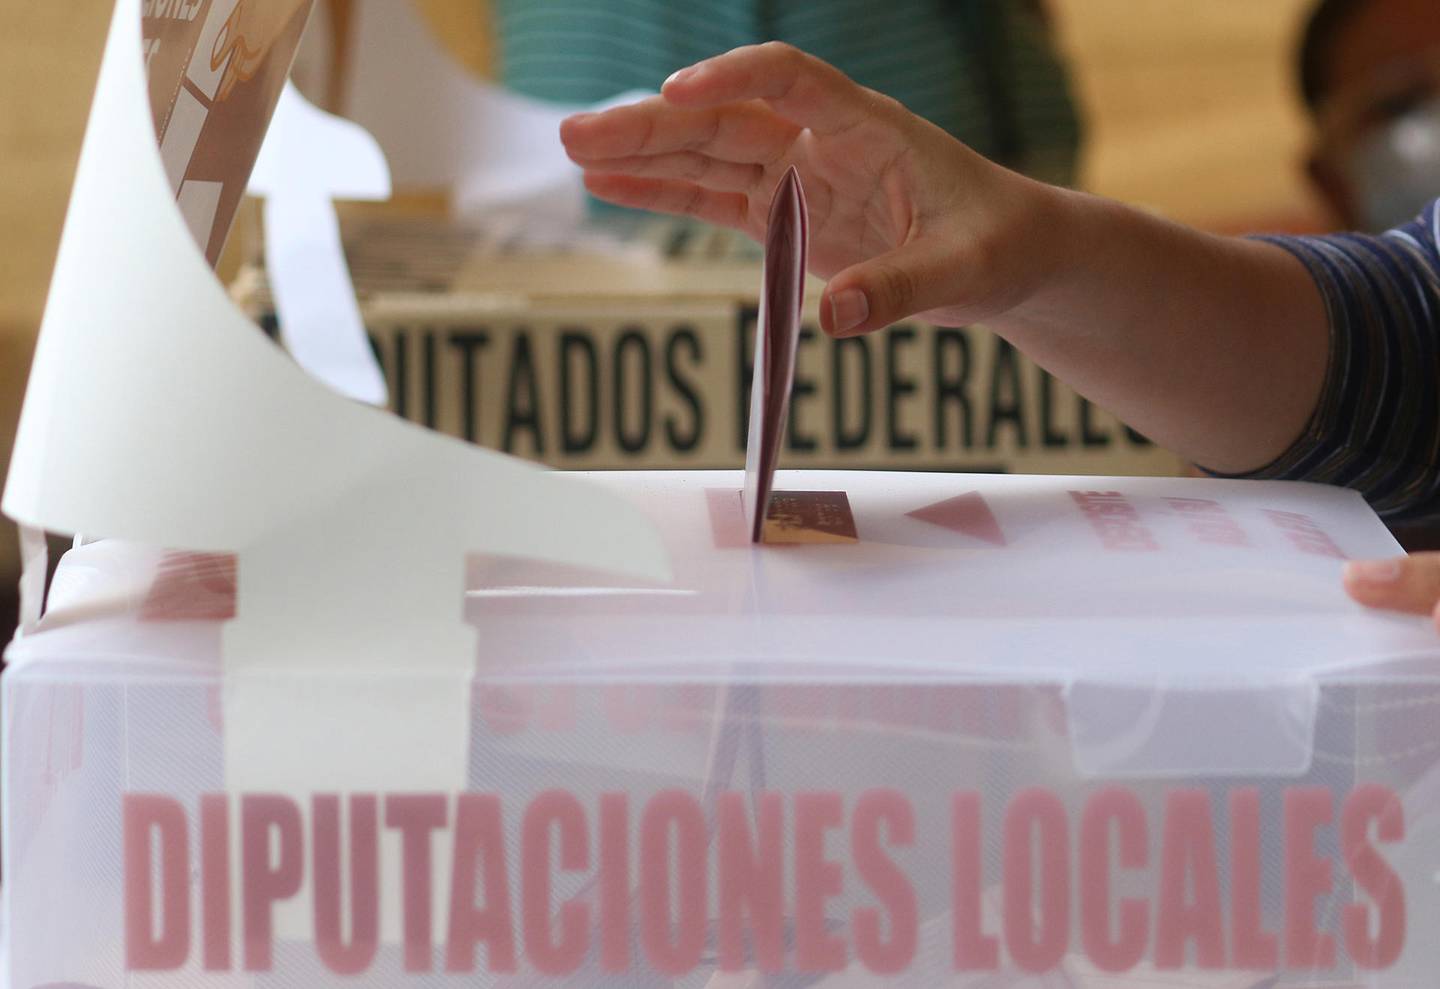 Fotografía de archivo que muestra una mujer emitiendo su voto en una casilla de la ciudad de Pachuca estado de Hidalgo (México). EFE/ Daniel Martínez Pelcastre